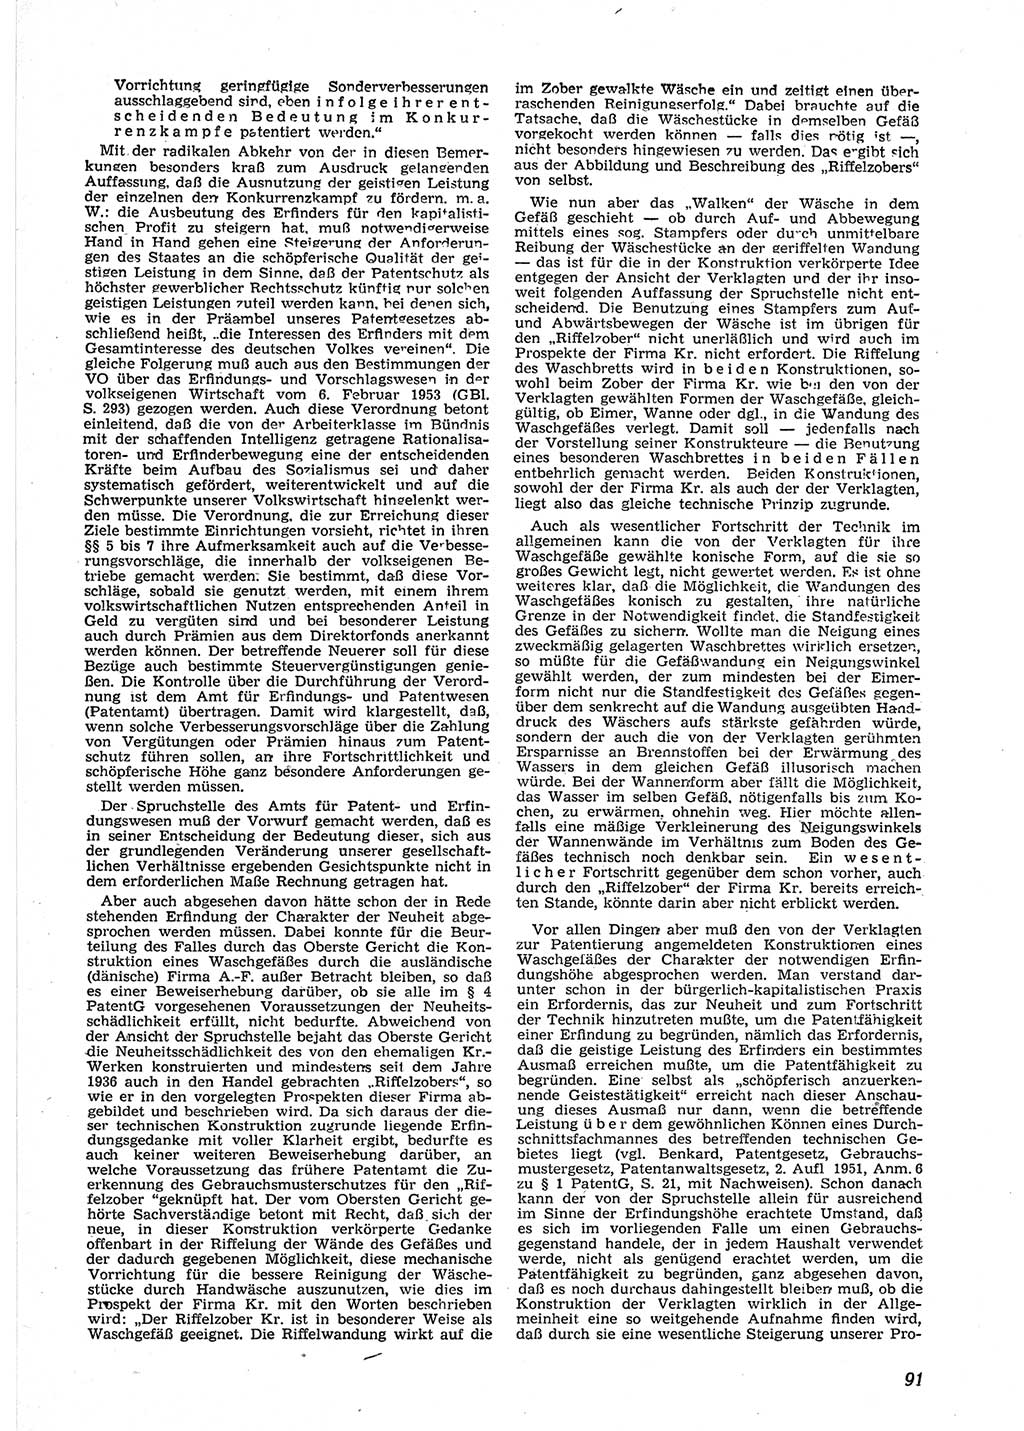 Neue Justiz (NJ), Zeitschrift für Recht und Rechtswissenschaft [Deutsche Demokratische Republik (DDR)], 9. Jahrgang 1955, Seite 91 (NJ DDR 1955, S. 91)